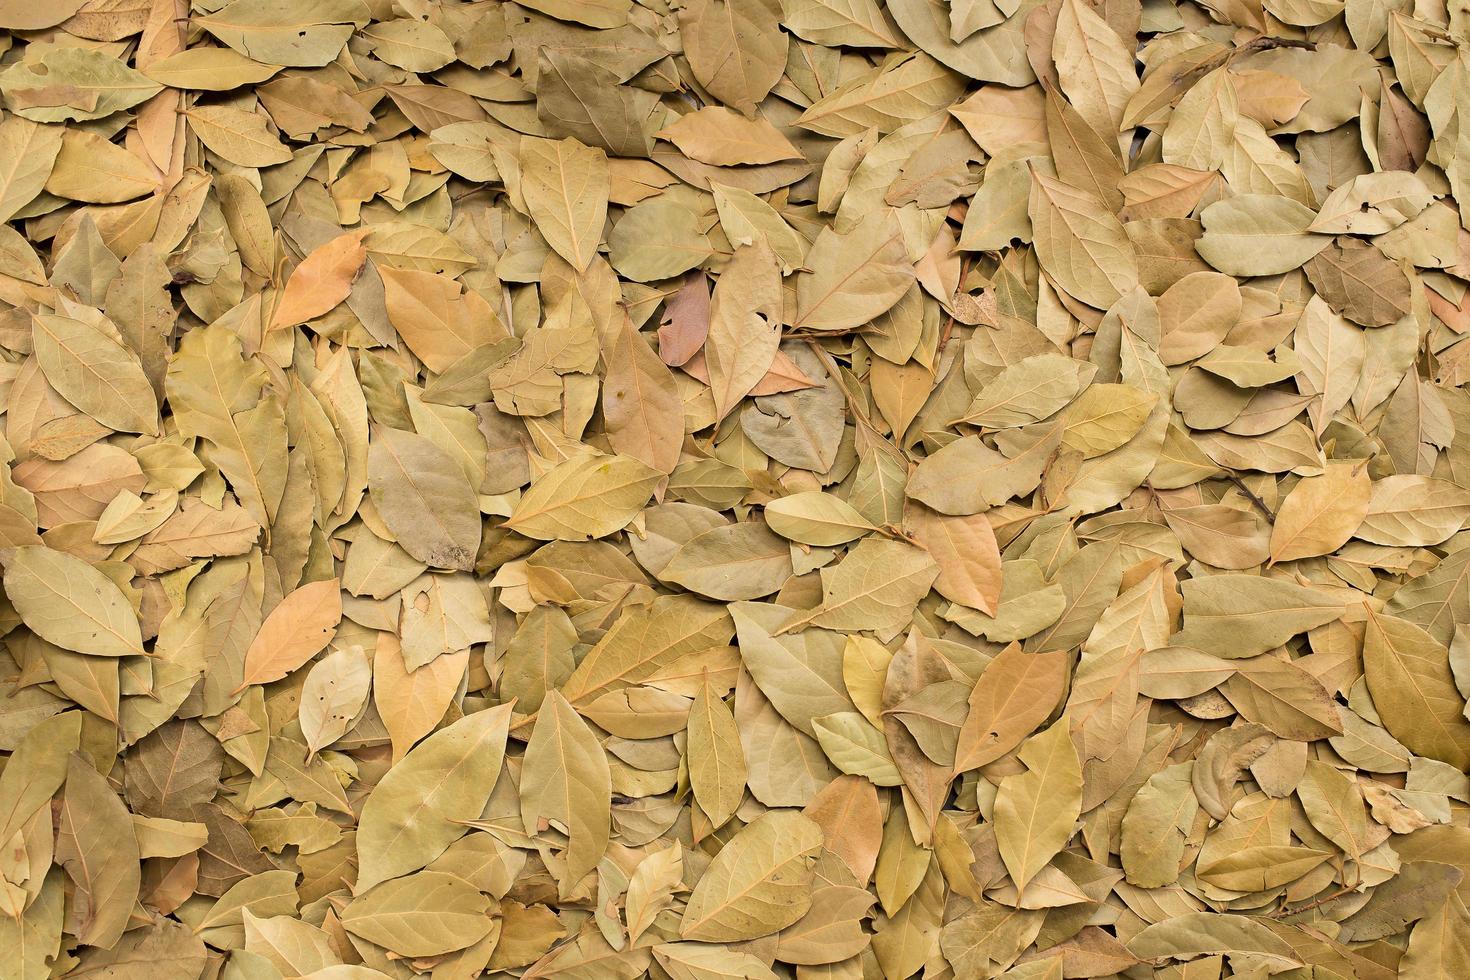 hojas secas en el suelo foto